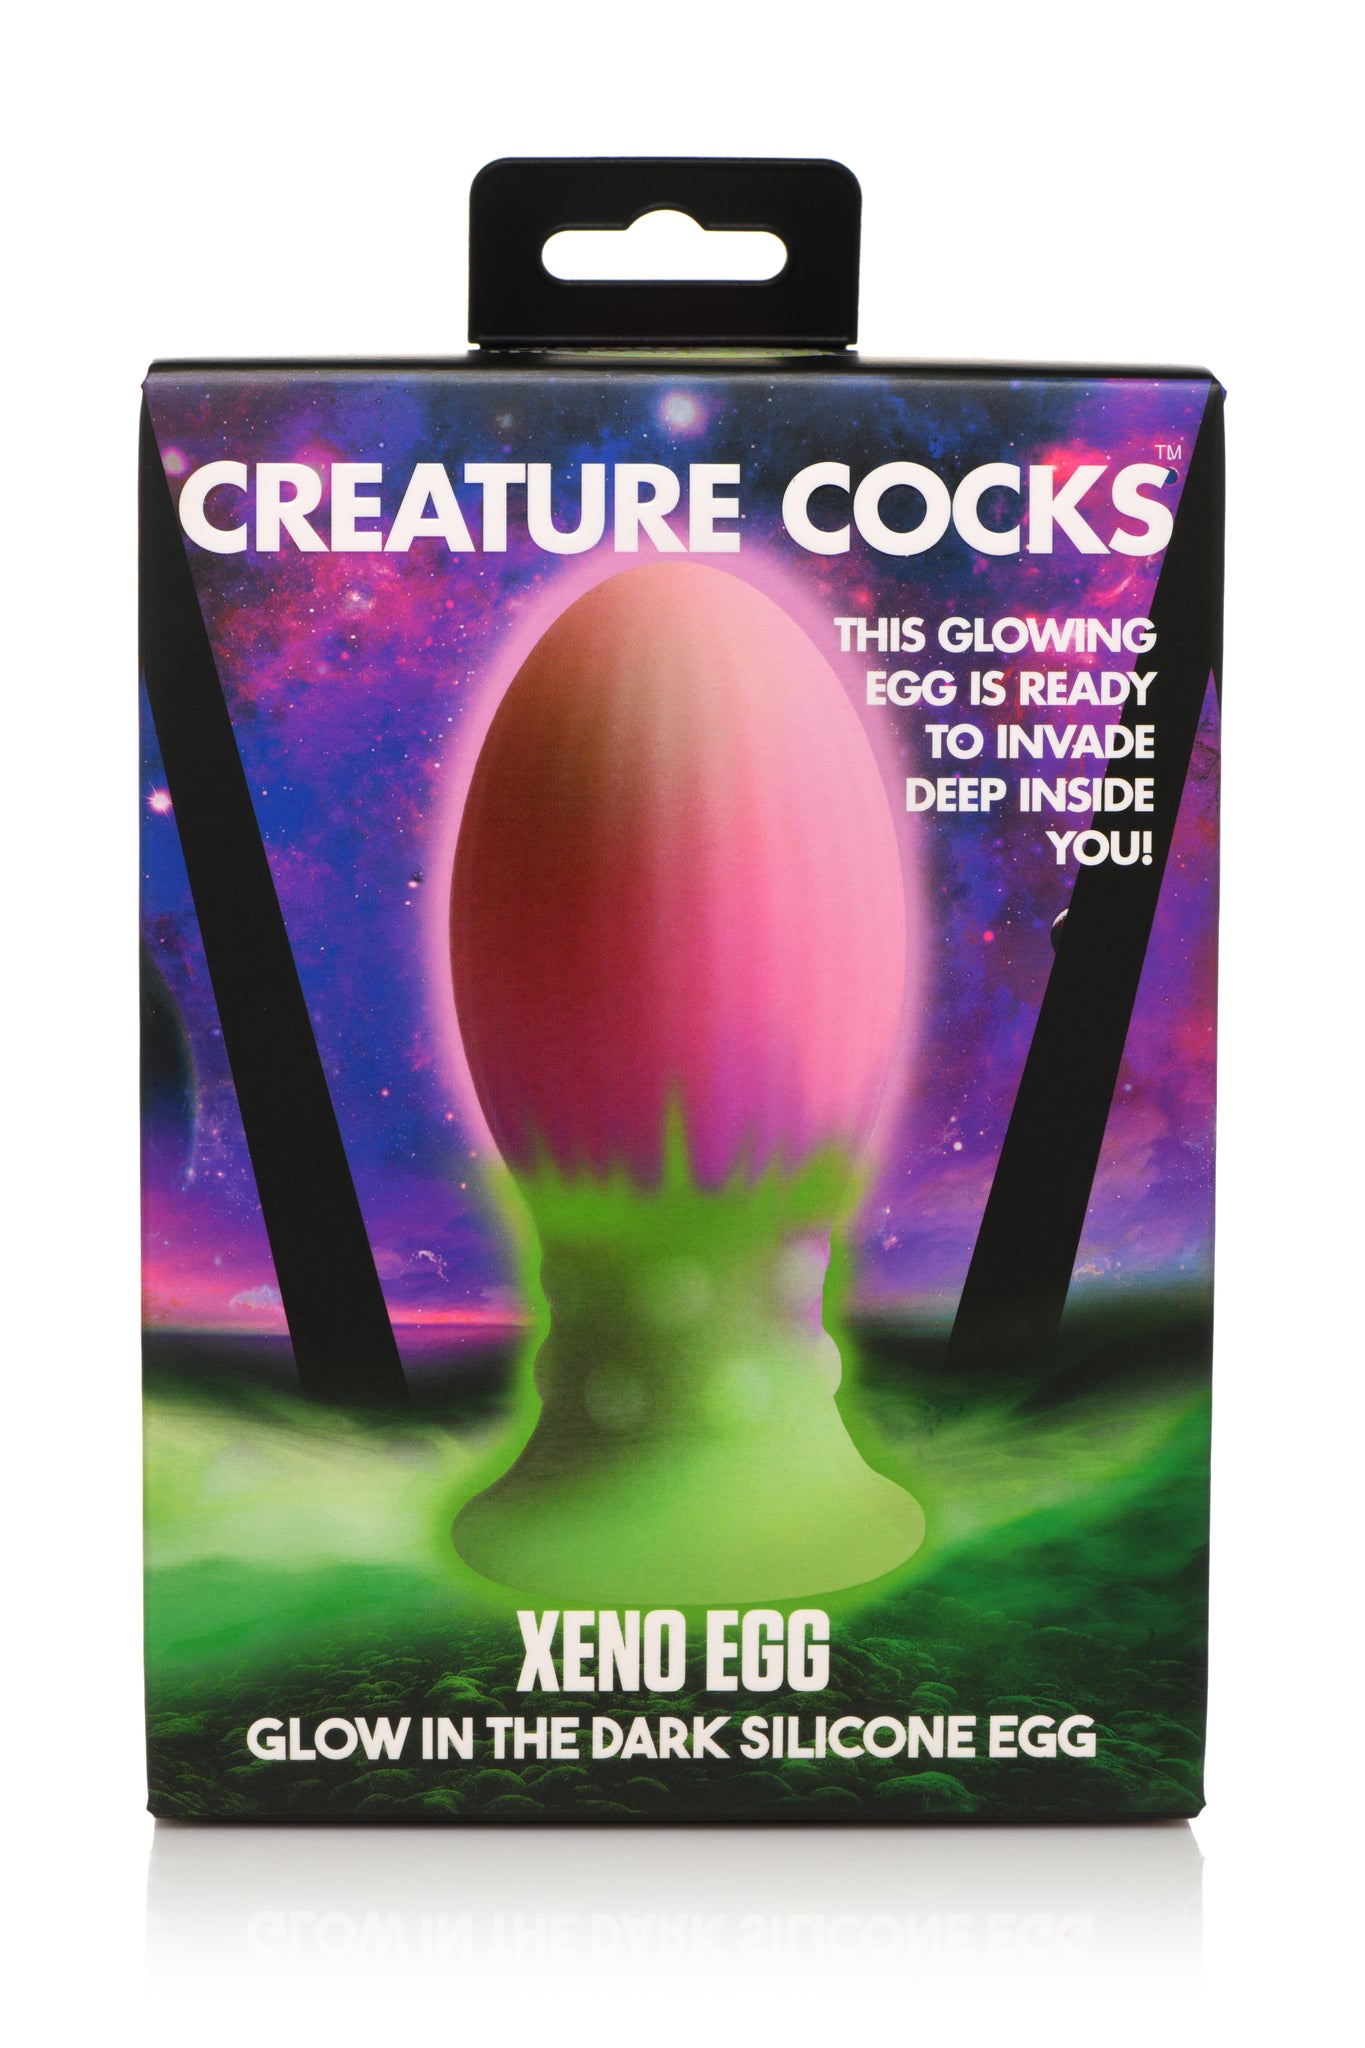 Creature Cocks Xeno Egg Glow In The Dark Silicone Egg